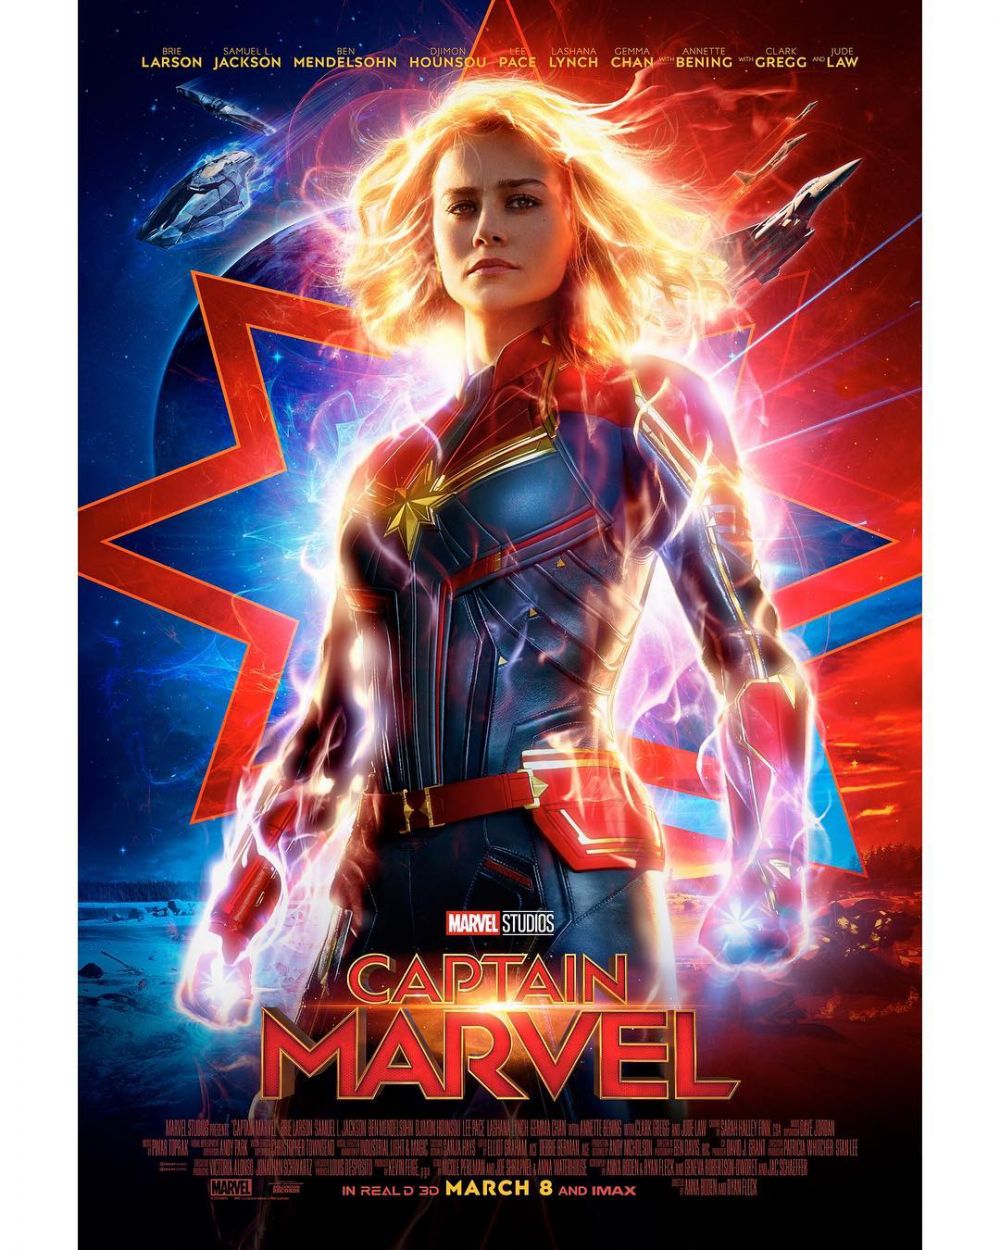 7 Film superhero ini rilis di 2019, termasuk Avengers Endgame